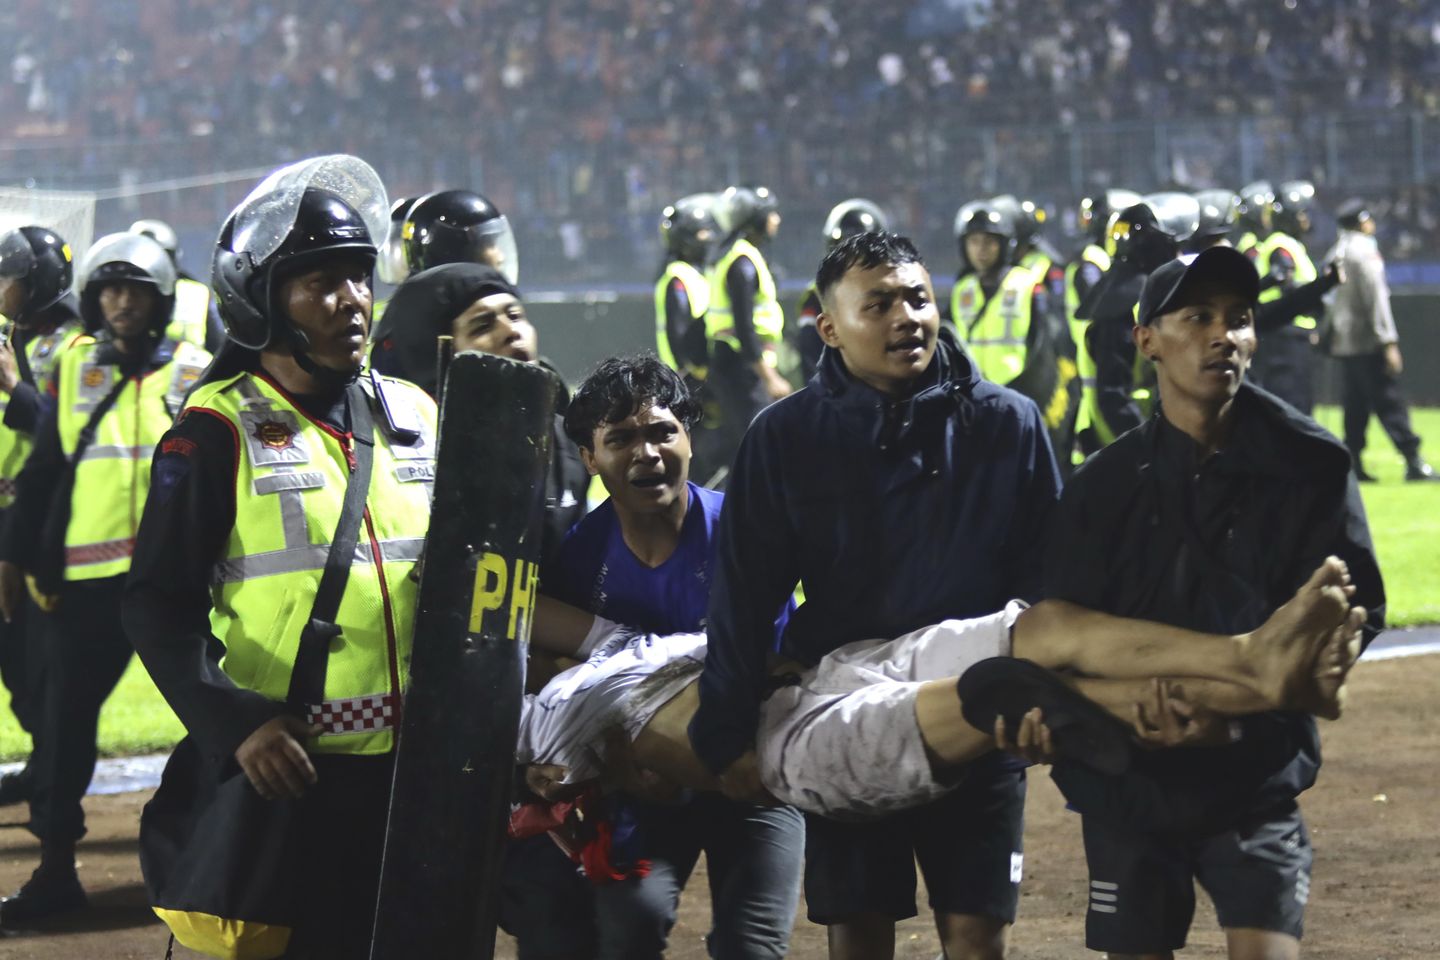 Endonezya'da bir futbol maçında çıkan isyanda en az 125 kişi öldü, izdiham çıktı.